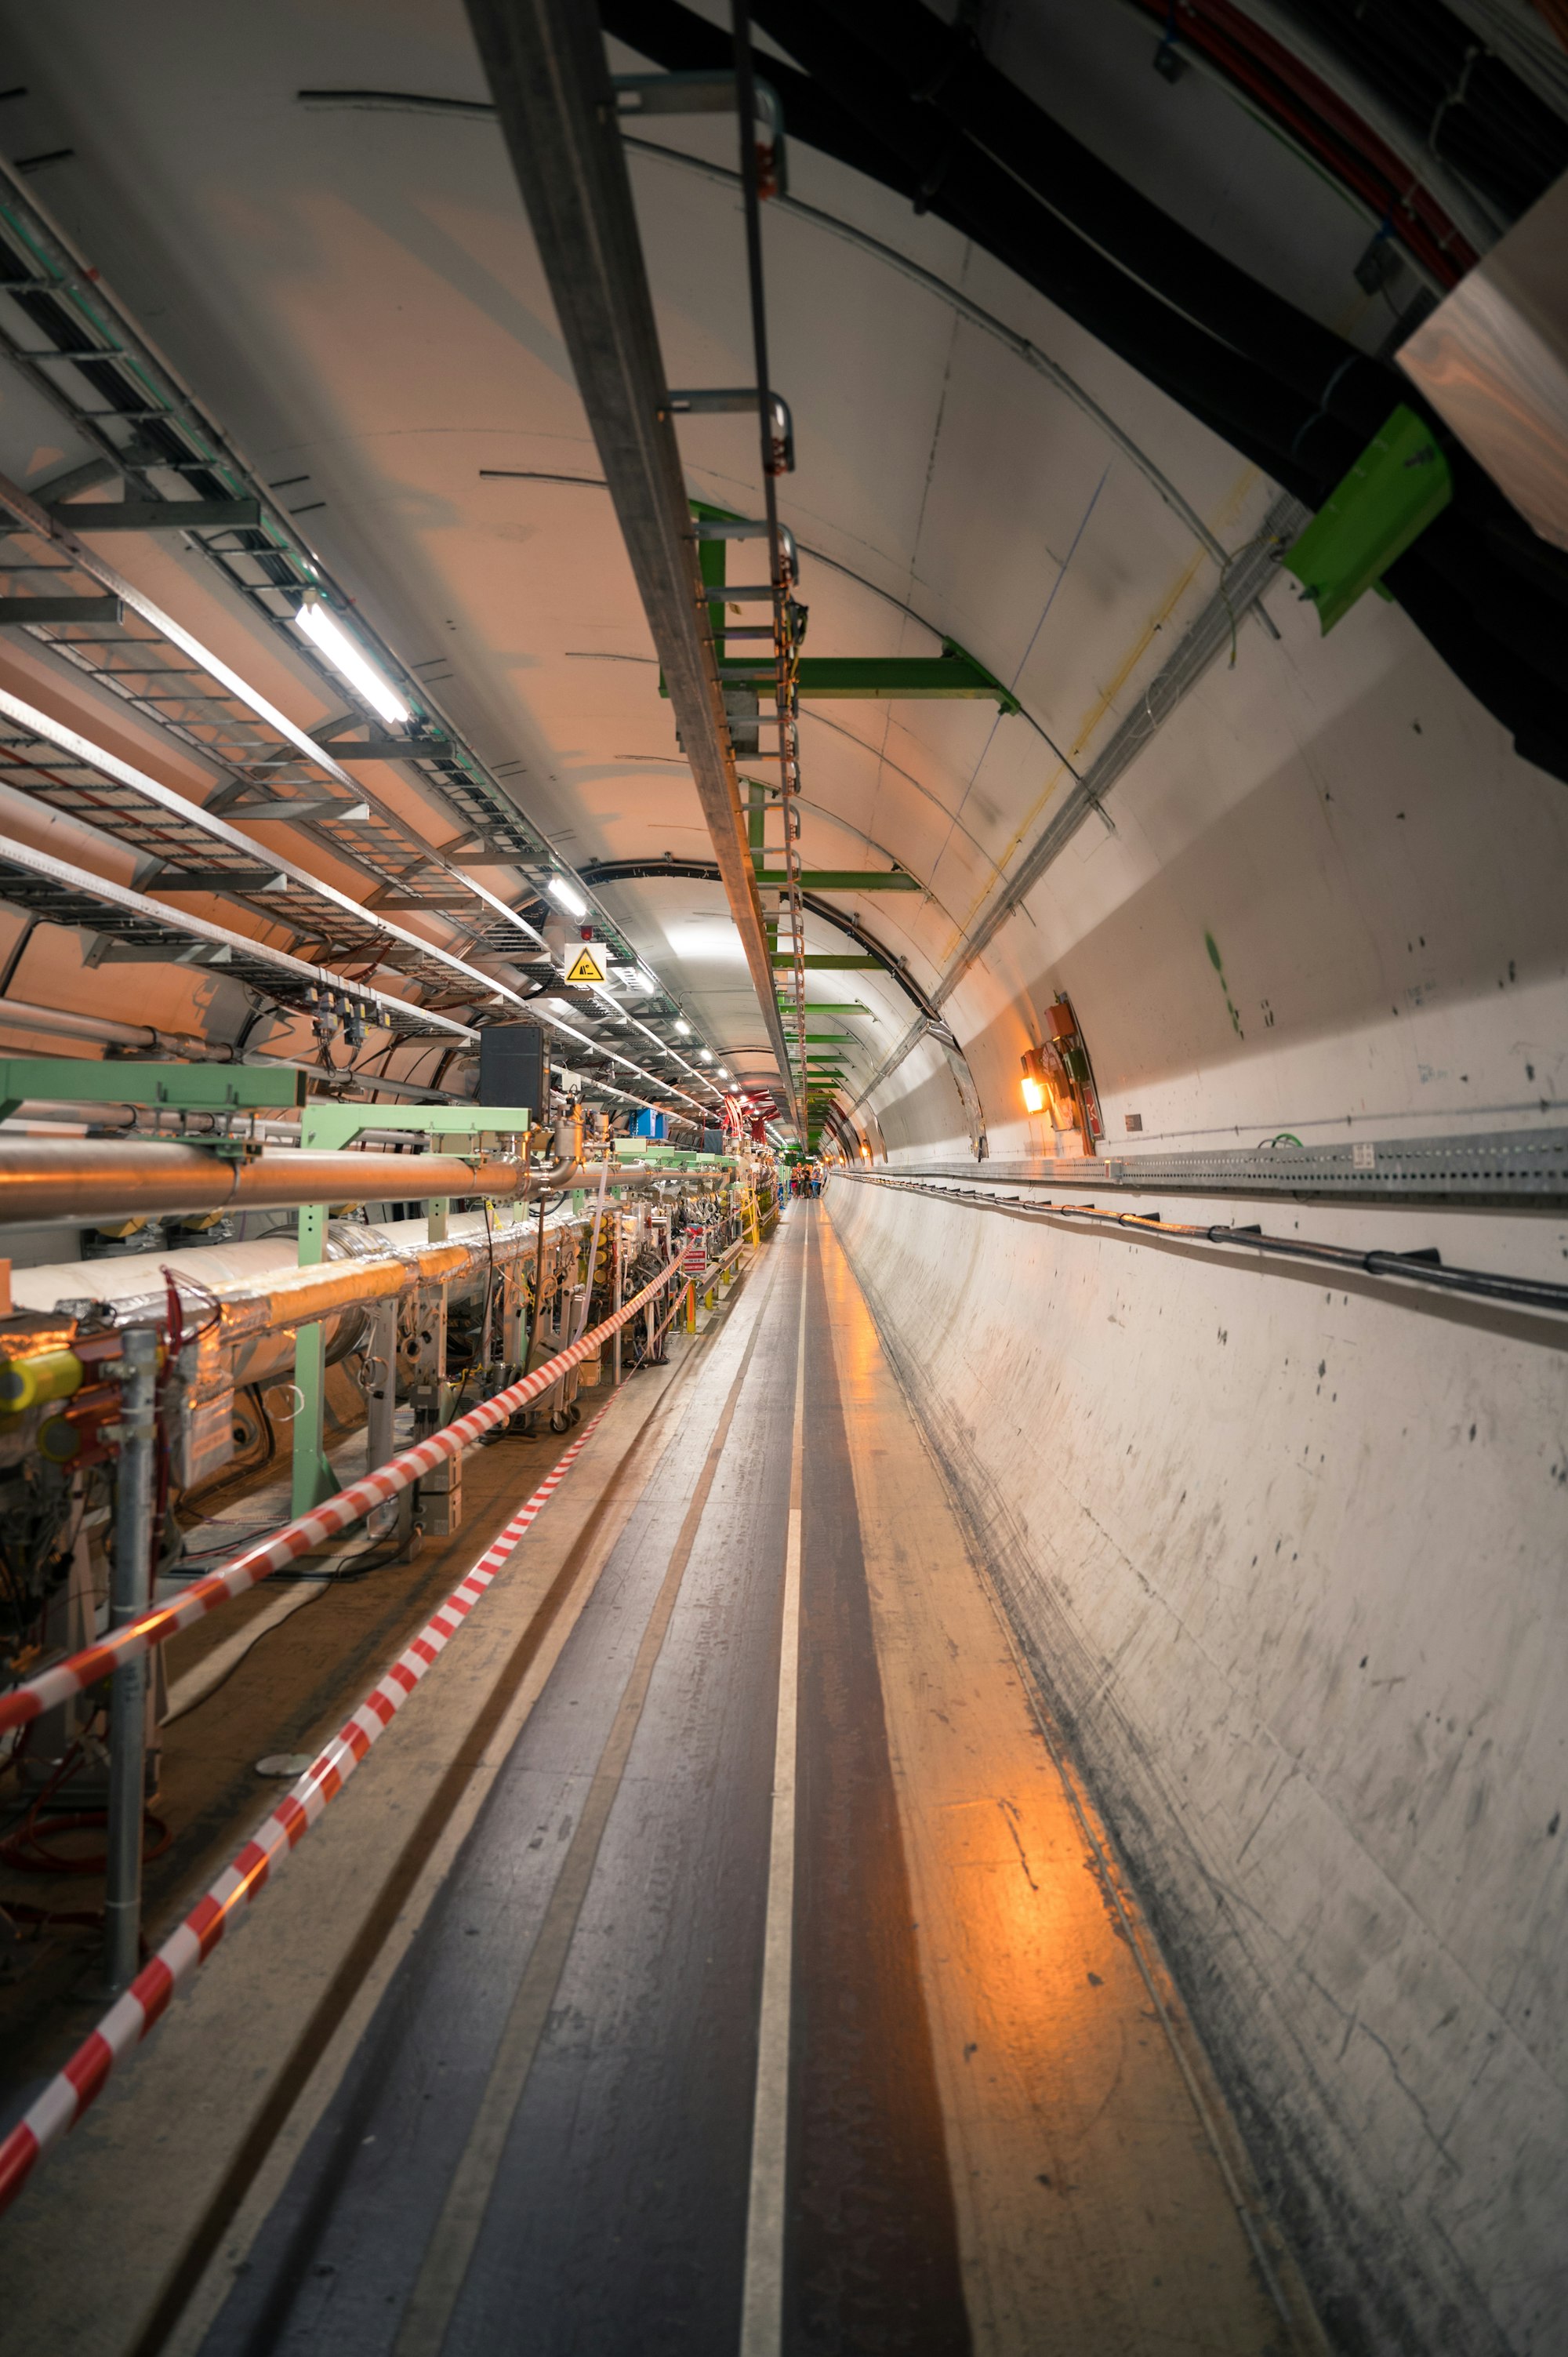 19 Μαρτίου 2013 Ανακάλυψη του Σωματιδίου Higgs στο CERN… ίσως η Σημαντικότερη Ανακάλυψη του Αιώνα στη Φυσική